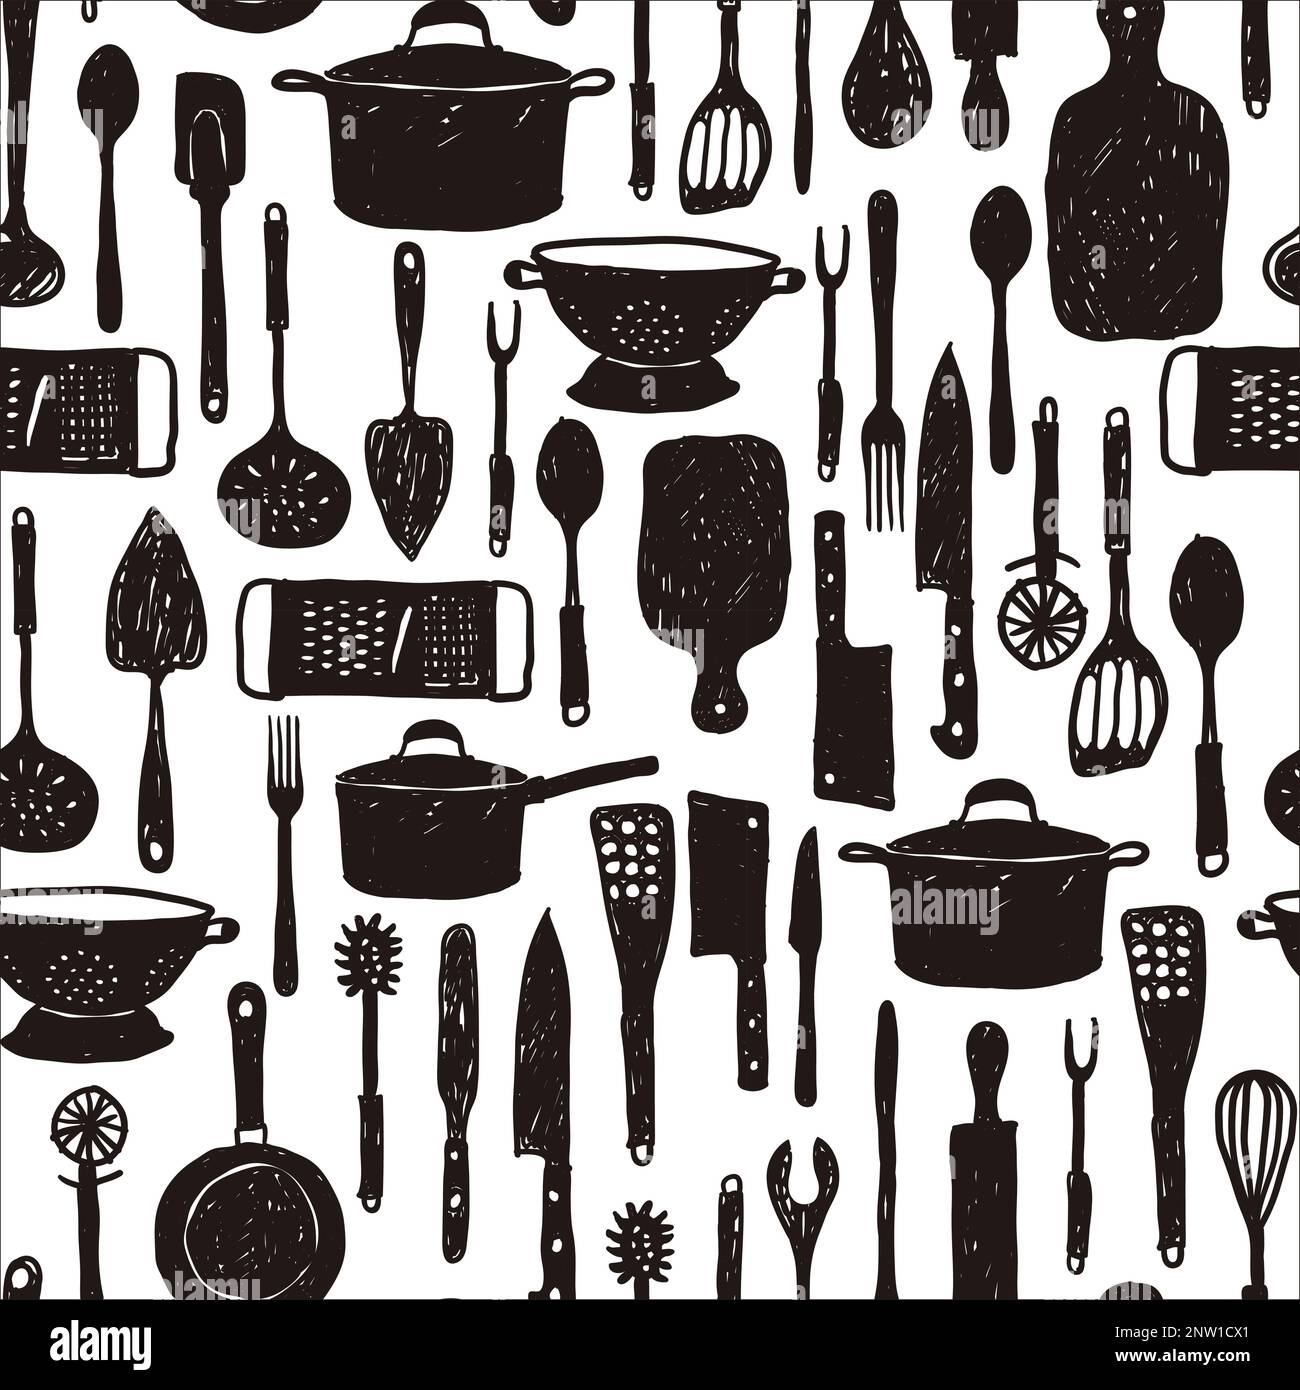 https://c8.alamy.com/compes/2nw1cx1/juego-de-herramientas-de-cocina-diseno-de-patron-sin-fisuras-diversos-utensilios-de-cocina-en-estilo-doodle-negro-sobre-fondo-aislado-ilustracion-vectorial-monocromo-para-bo-2nw1cx1.jpg